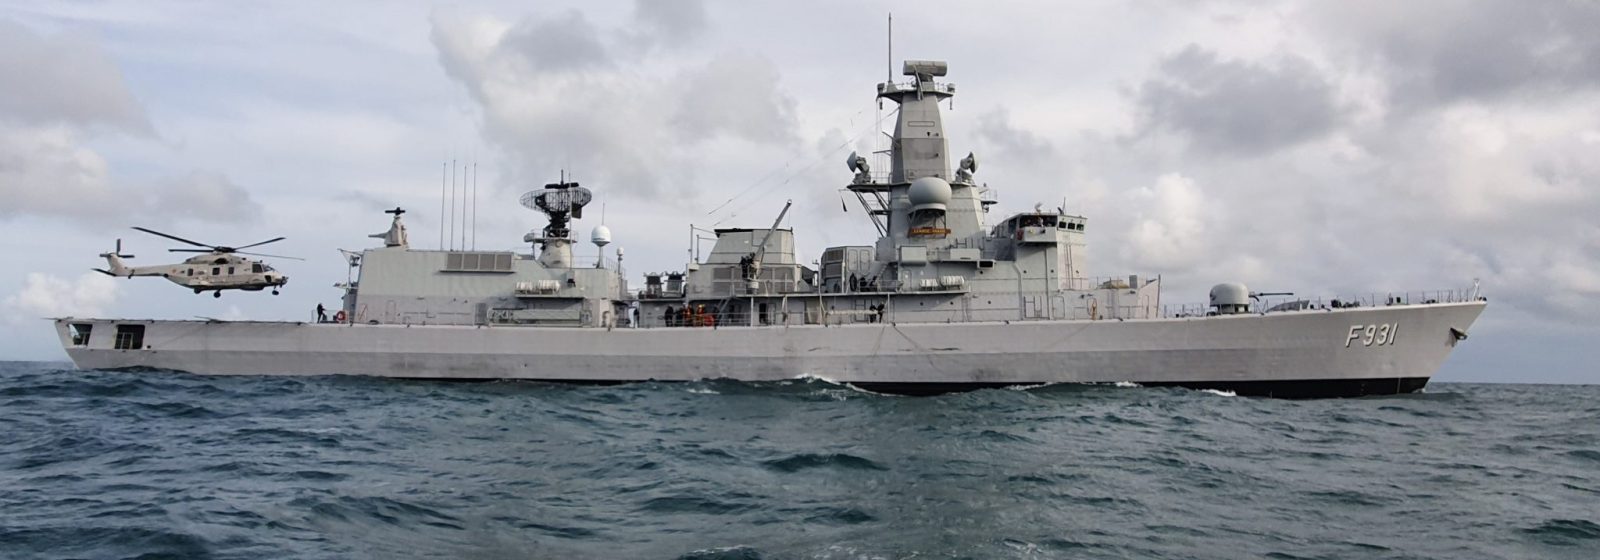 Het Belgische fregat 'Louise Marie'